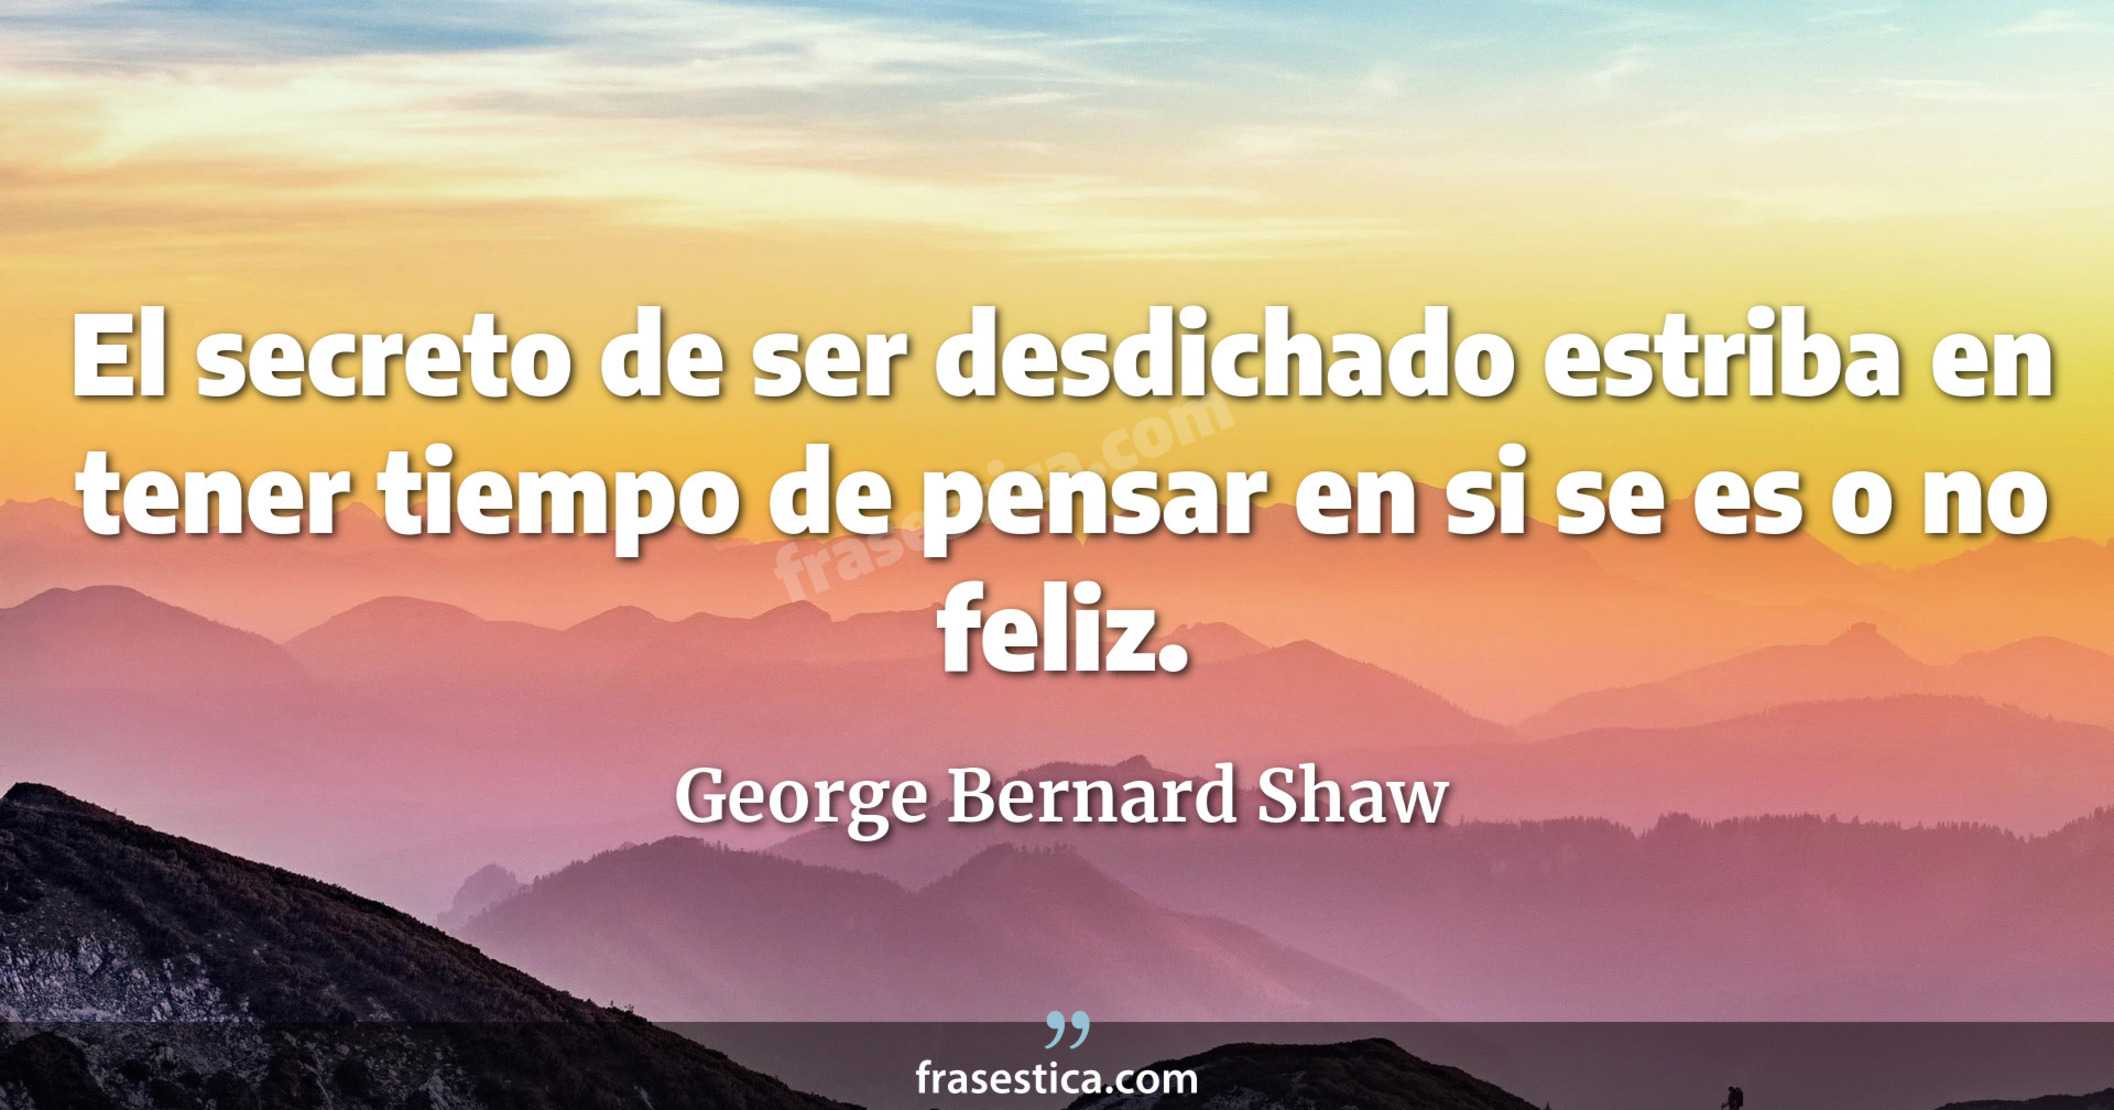 El secreto de ser desdichado estriba en tener tiempo de pensar en si se es o no feliz. - George Bernard Shaw